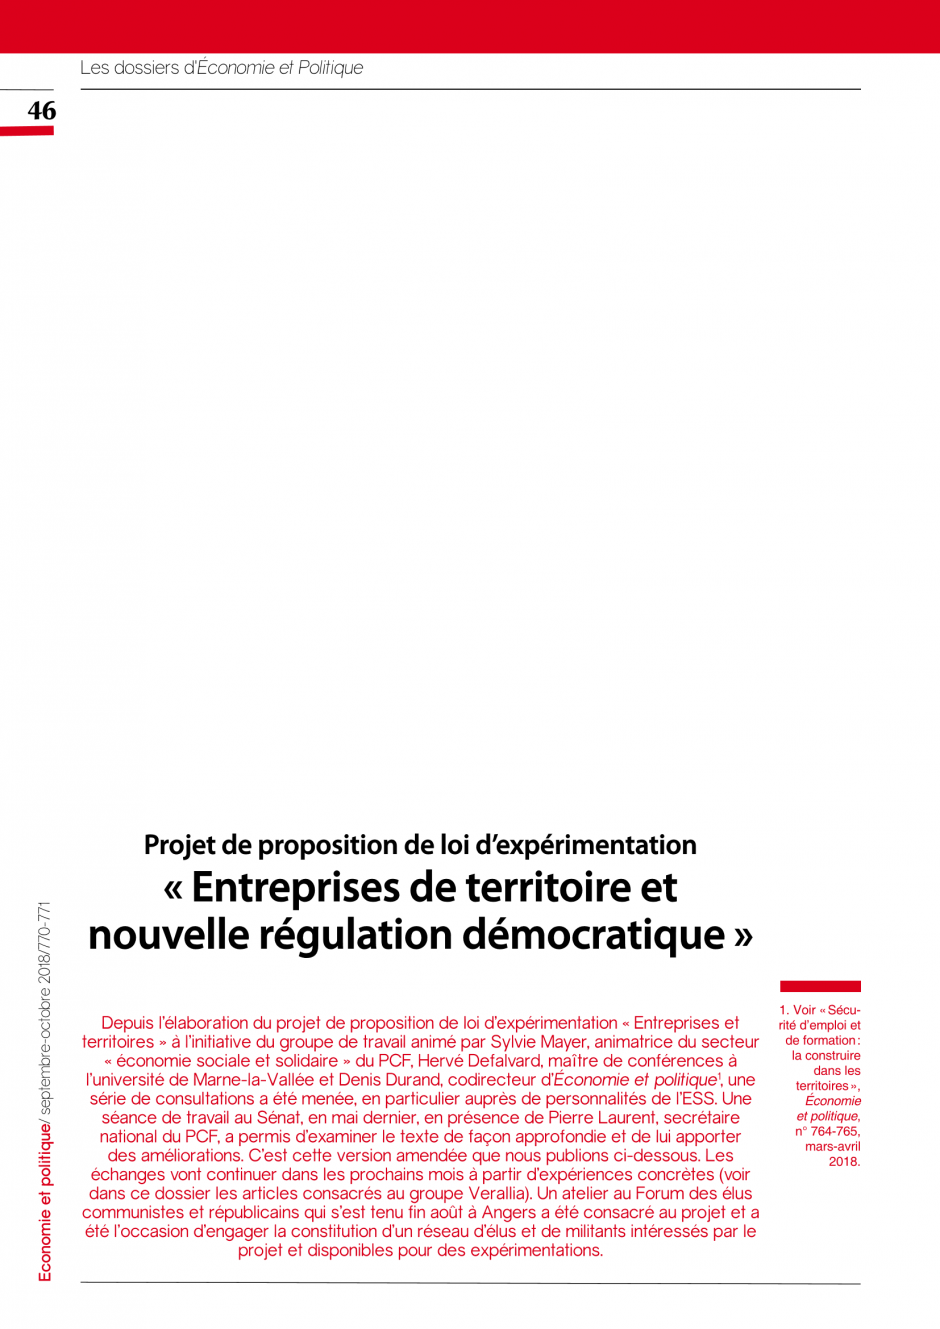 Projet de proposition de loi d’expérimentation « Entreprises de territoire et nouvelle régulation démocratique »